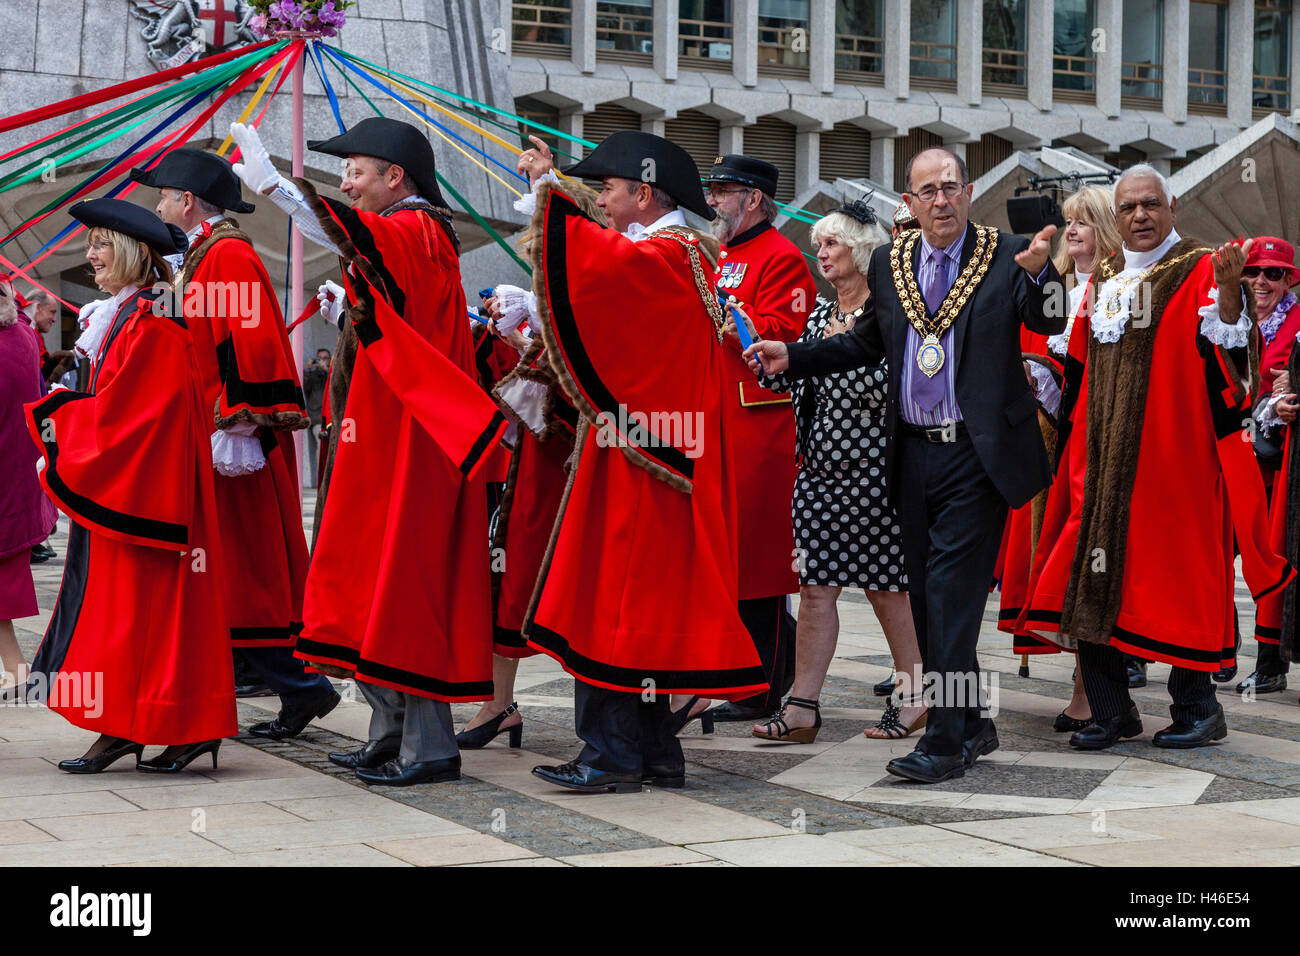 Les maires de Londres Inscrivez-vous à un Maypole Dance durant la Pearly Kings and Queens' Harvest Festival, le Guildhall Yard, Londres, Angleterre Banque D'Images